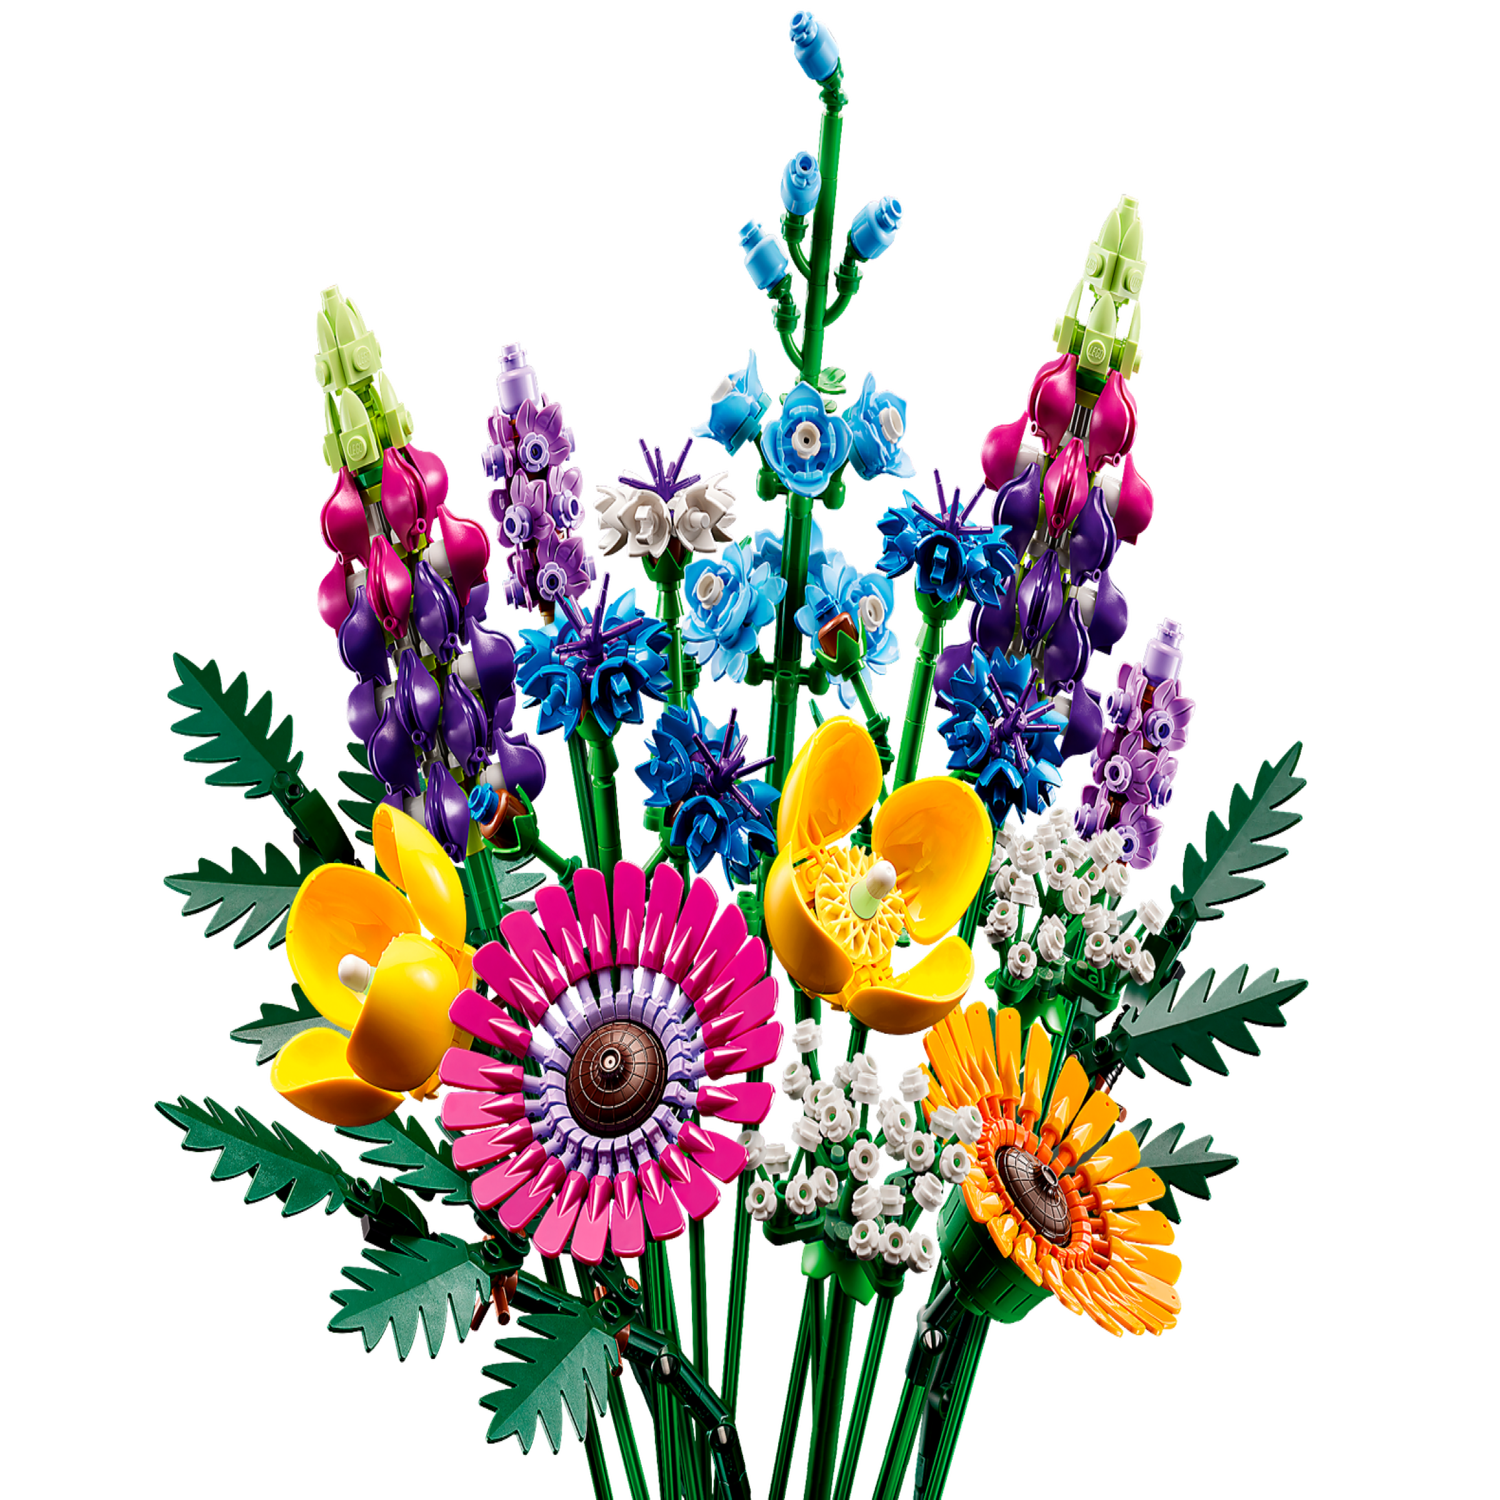 Lego - Icons - Bouquet De Fleurs Sauvages - 10313